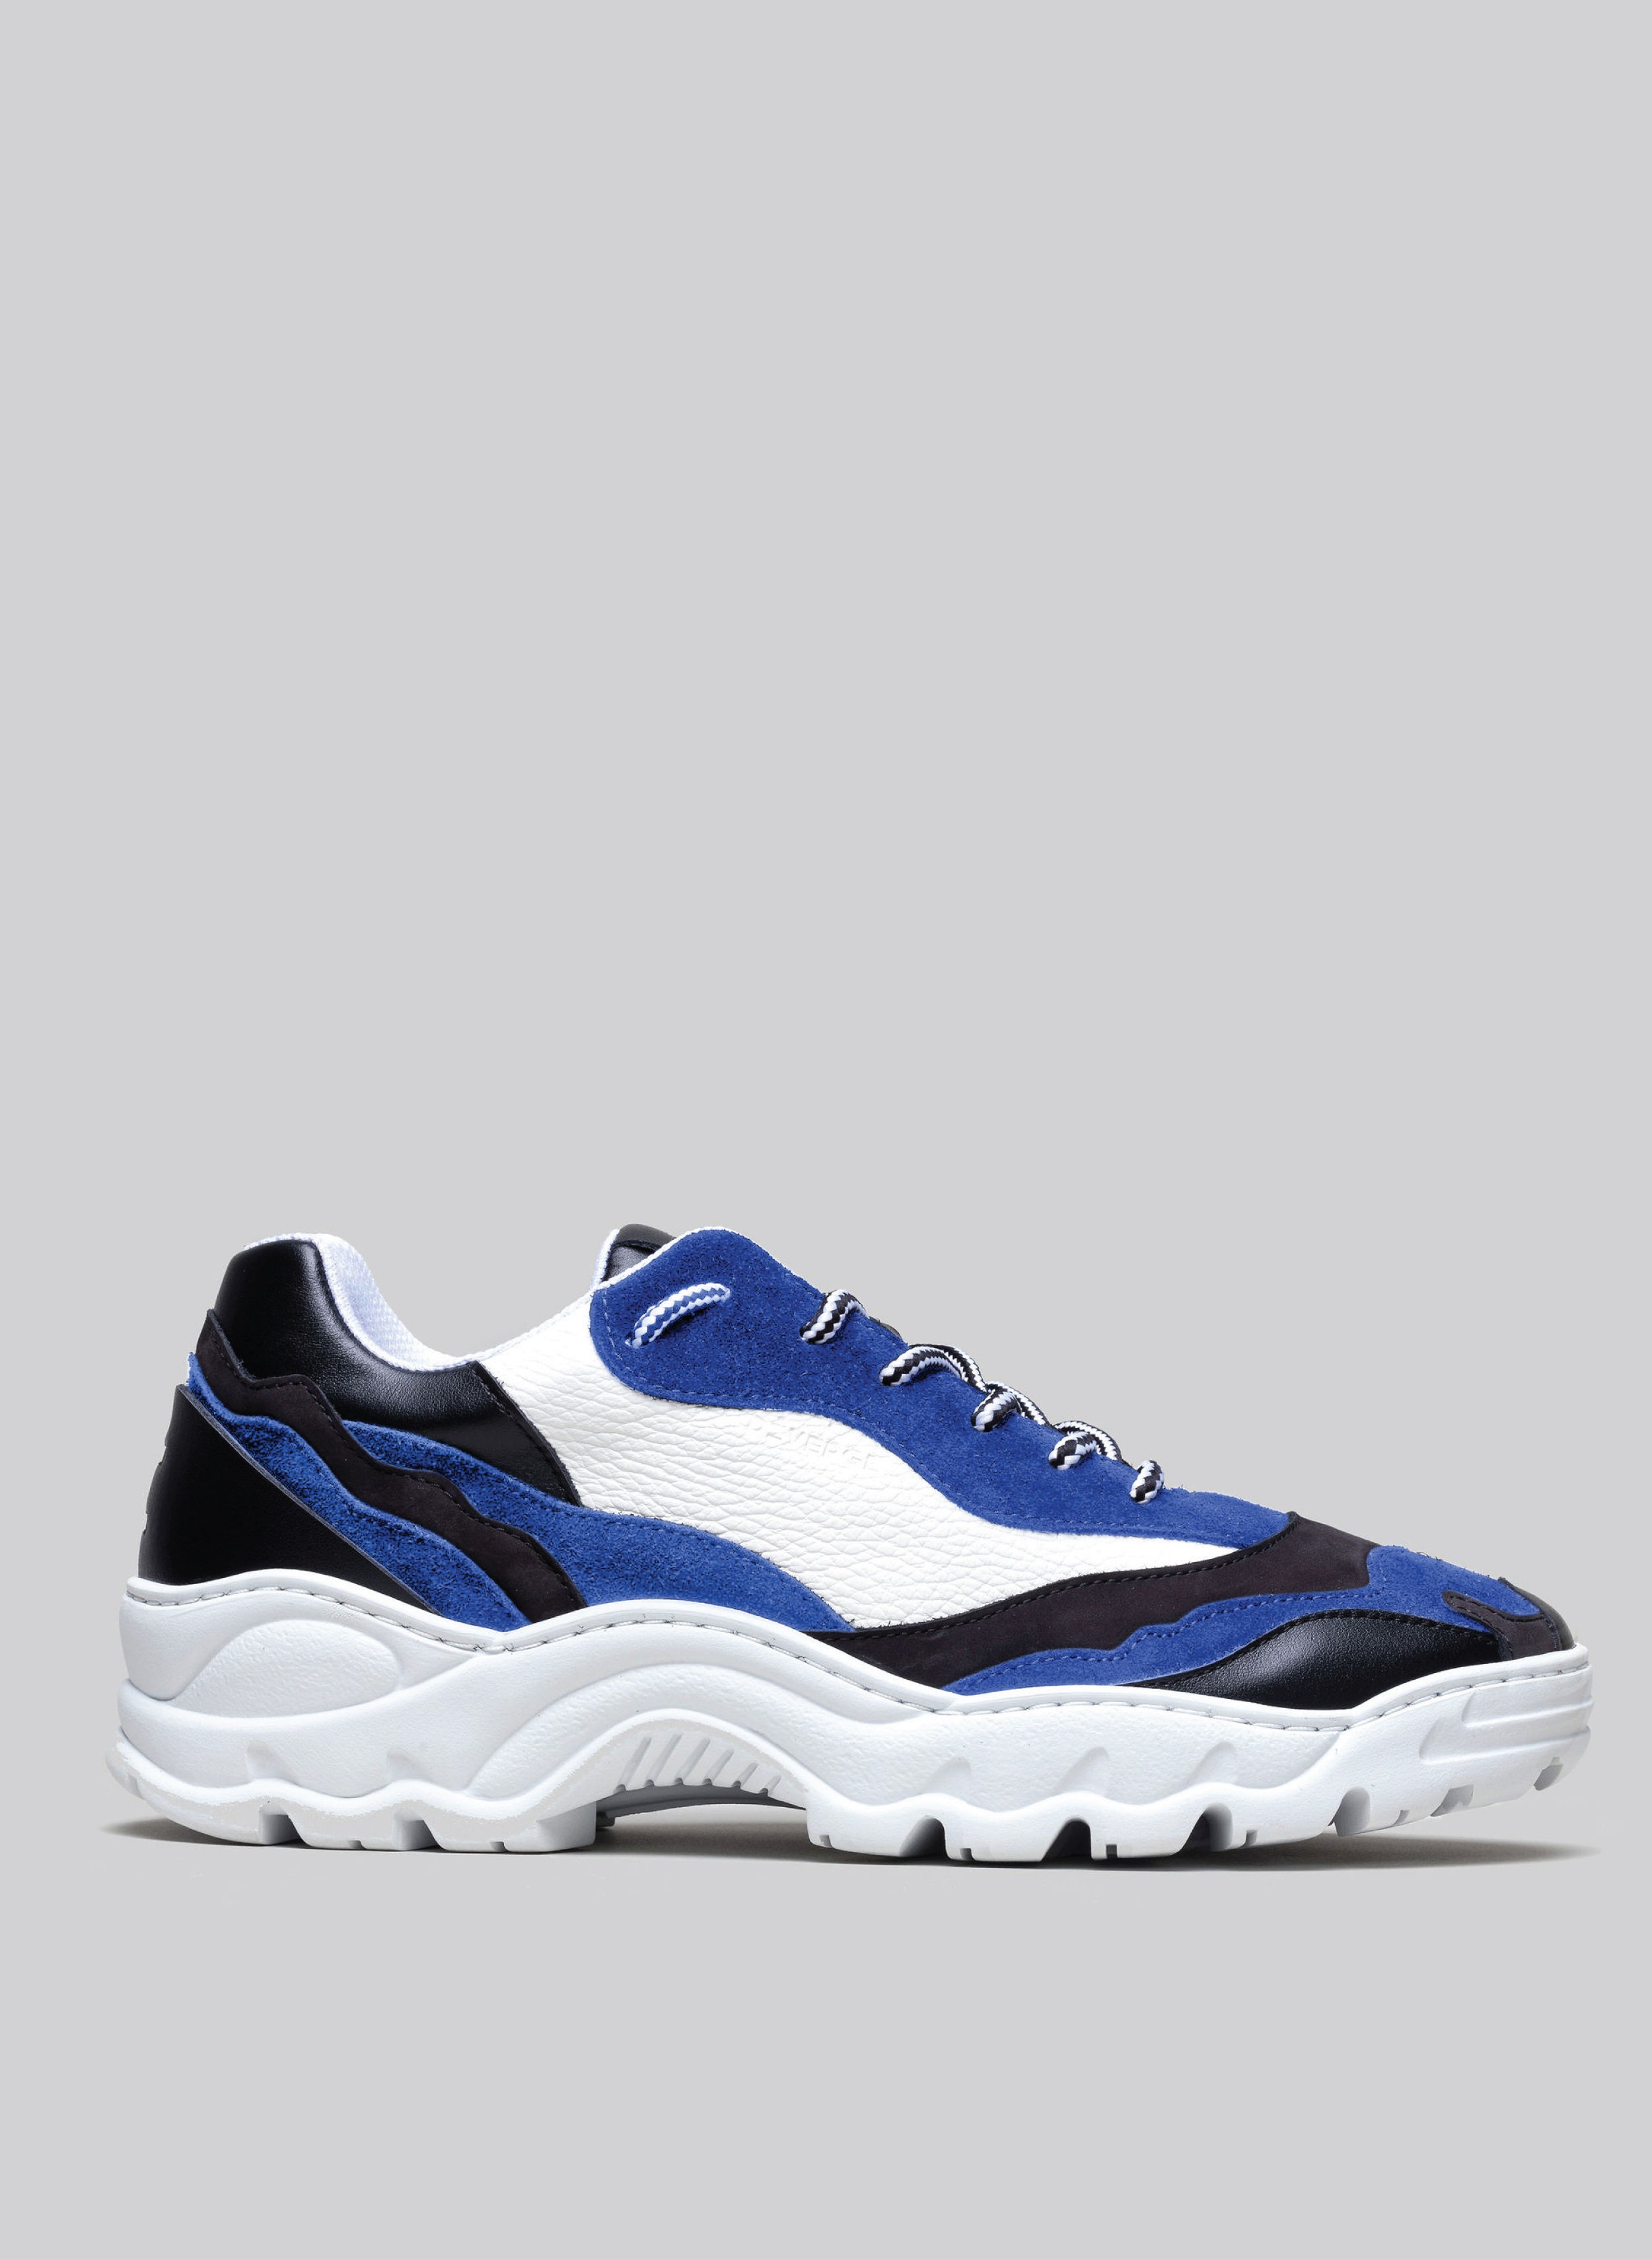 Farbmix aus schwarzem, weißem und blauem Premium-Leder sneakers landscape mit raffinierter Silhouetten-Seitenansicht